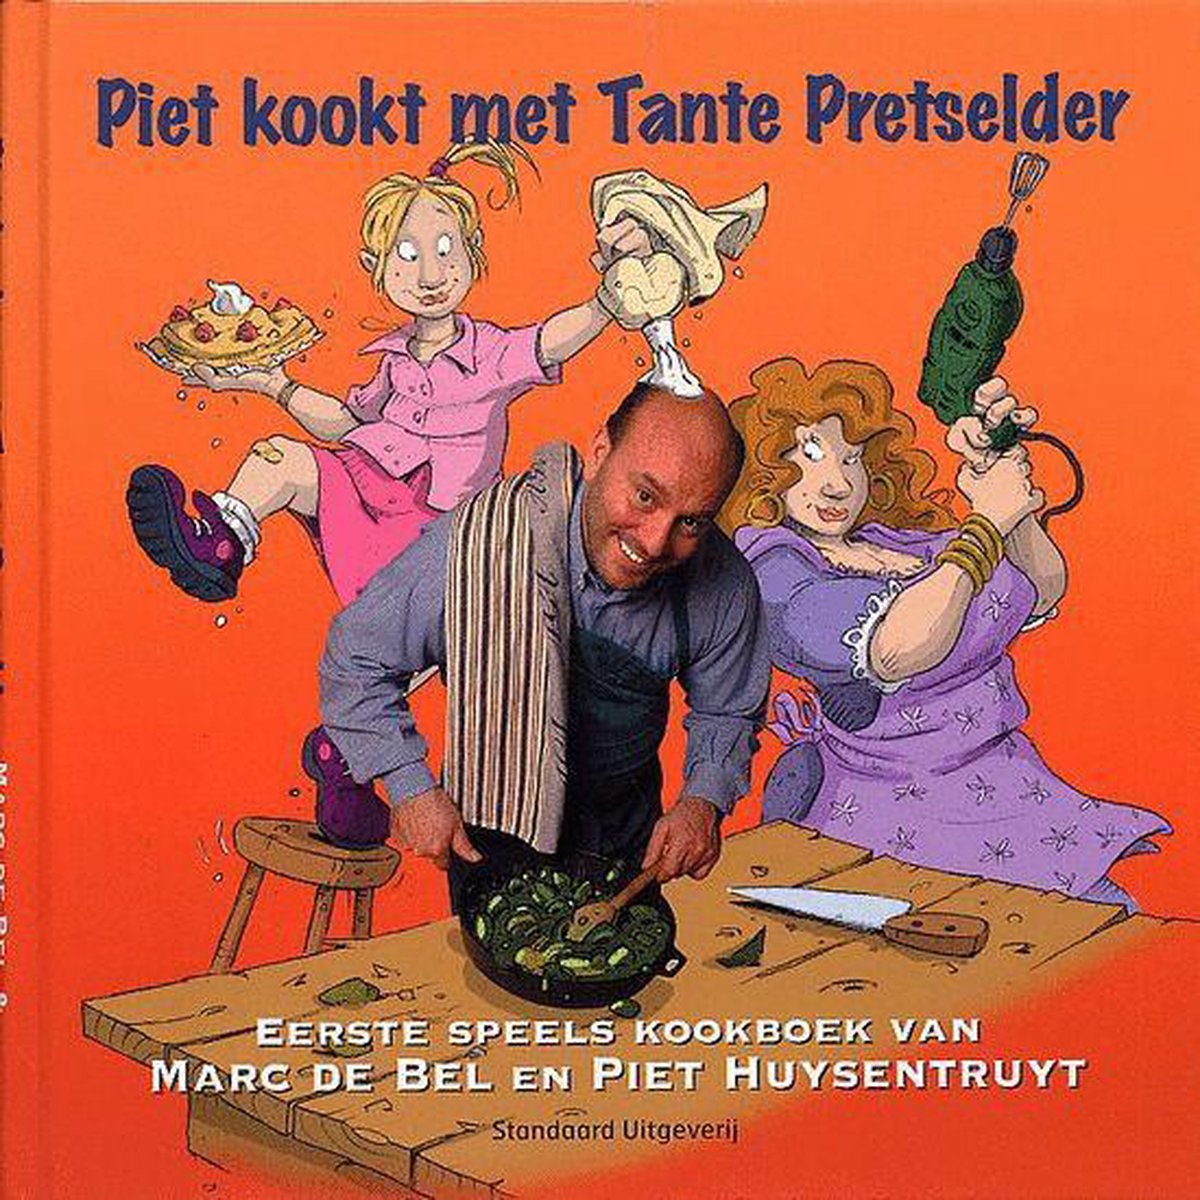 Piet kookt met Tante Pretselder